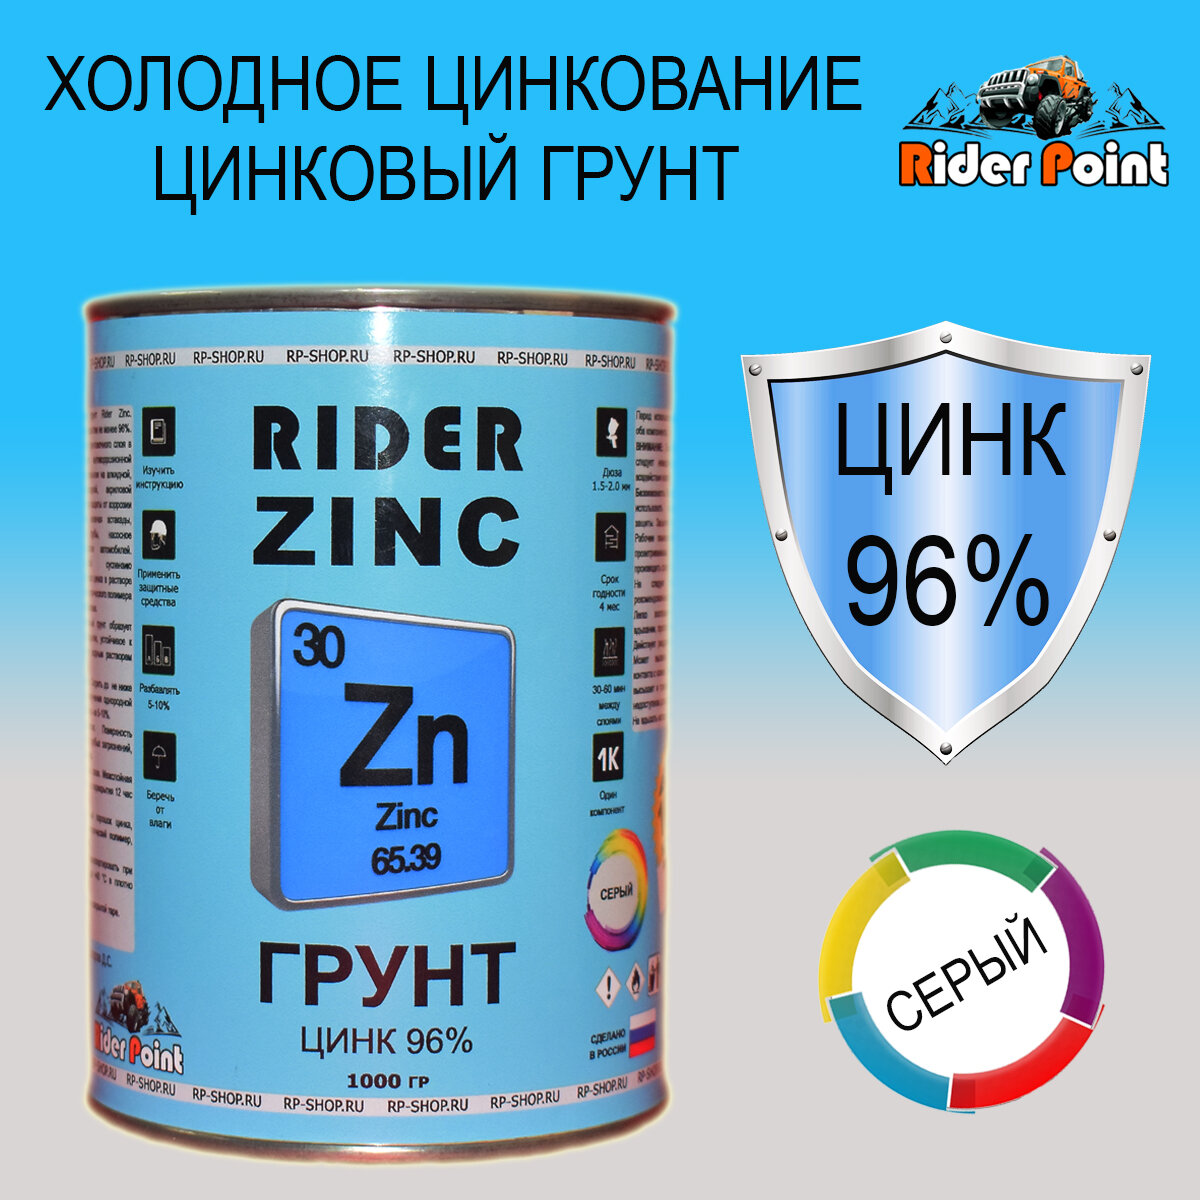 Цинковый грунт Rider Zinc 1 кг. Содержит 96% цинка.